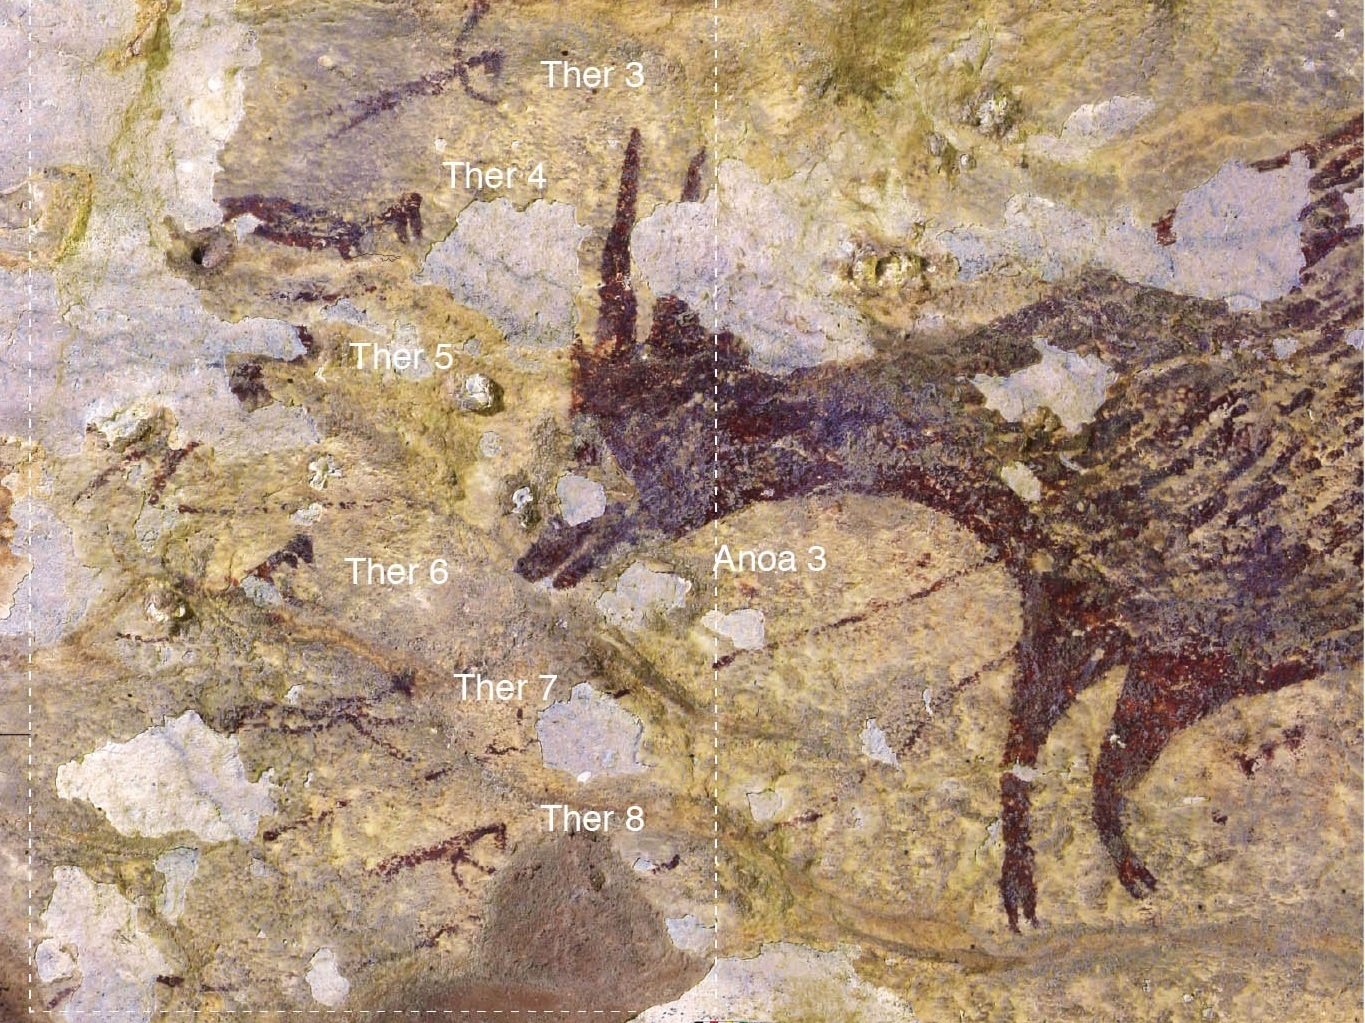 พบภาพวาดรูปสัตว์ในถ้ำอินโดนีเซียอายุราว 40,000 ปี และอาจเป็นภาพวาดเล่าเรื่องเก่าสุดในโลก